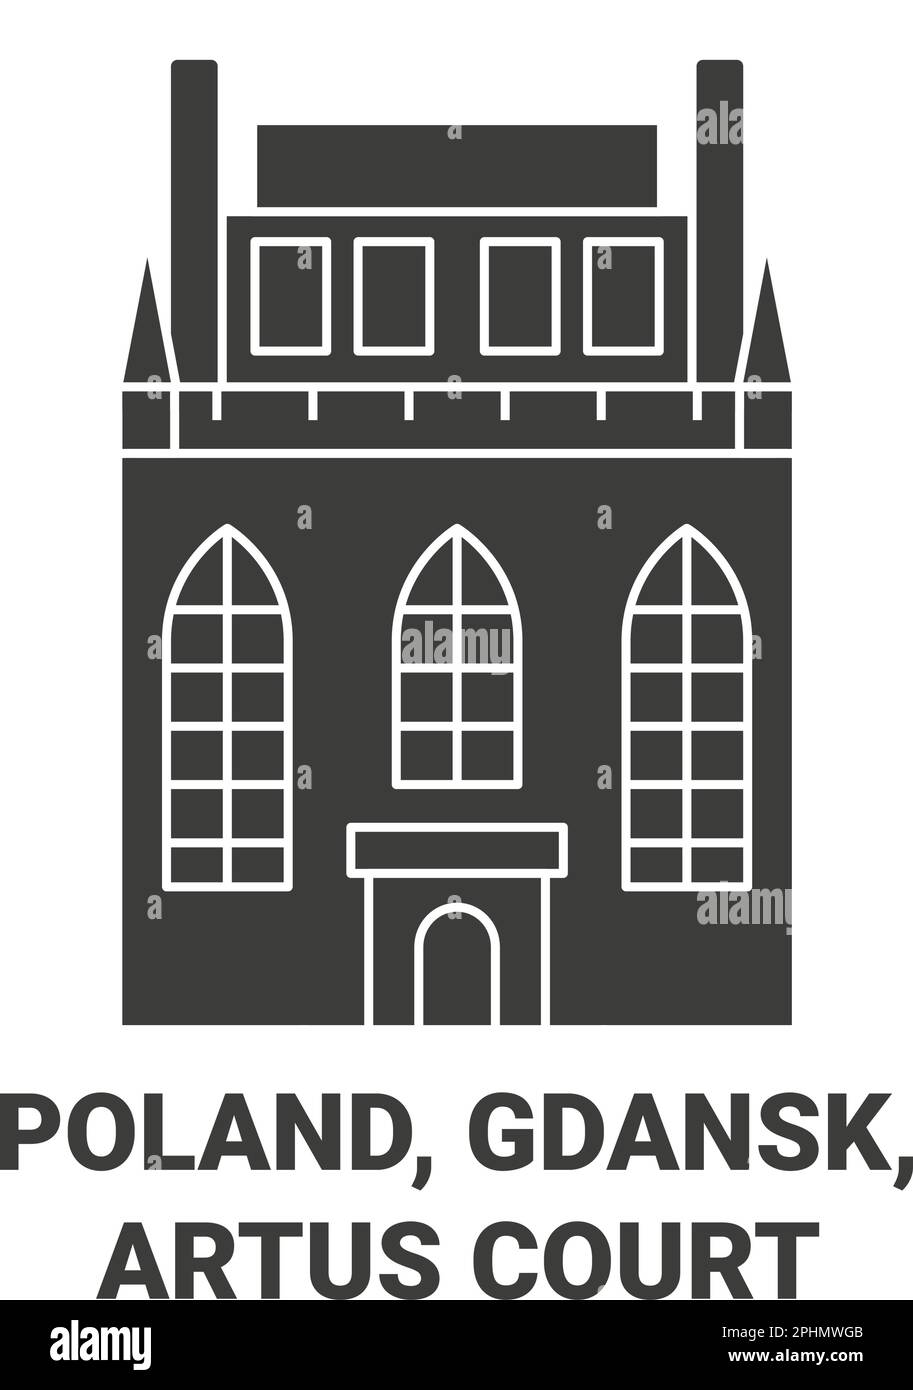 Poland, Gdansk, Artus Court travel landmark vector illustration Stock Vector